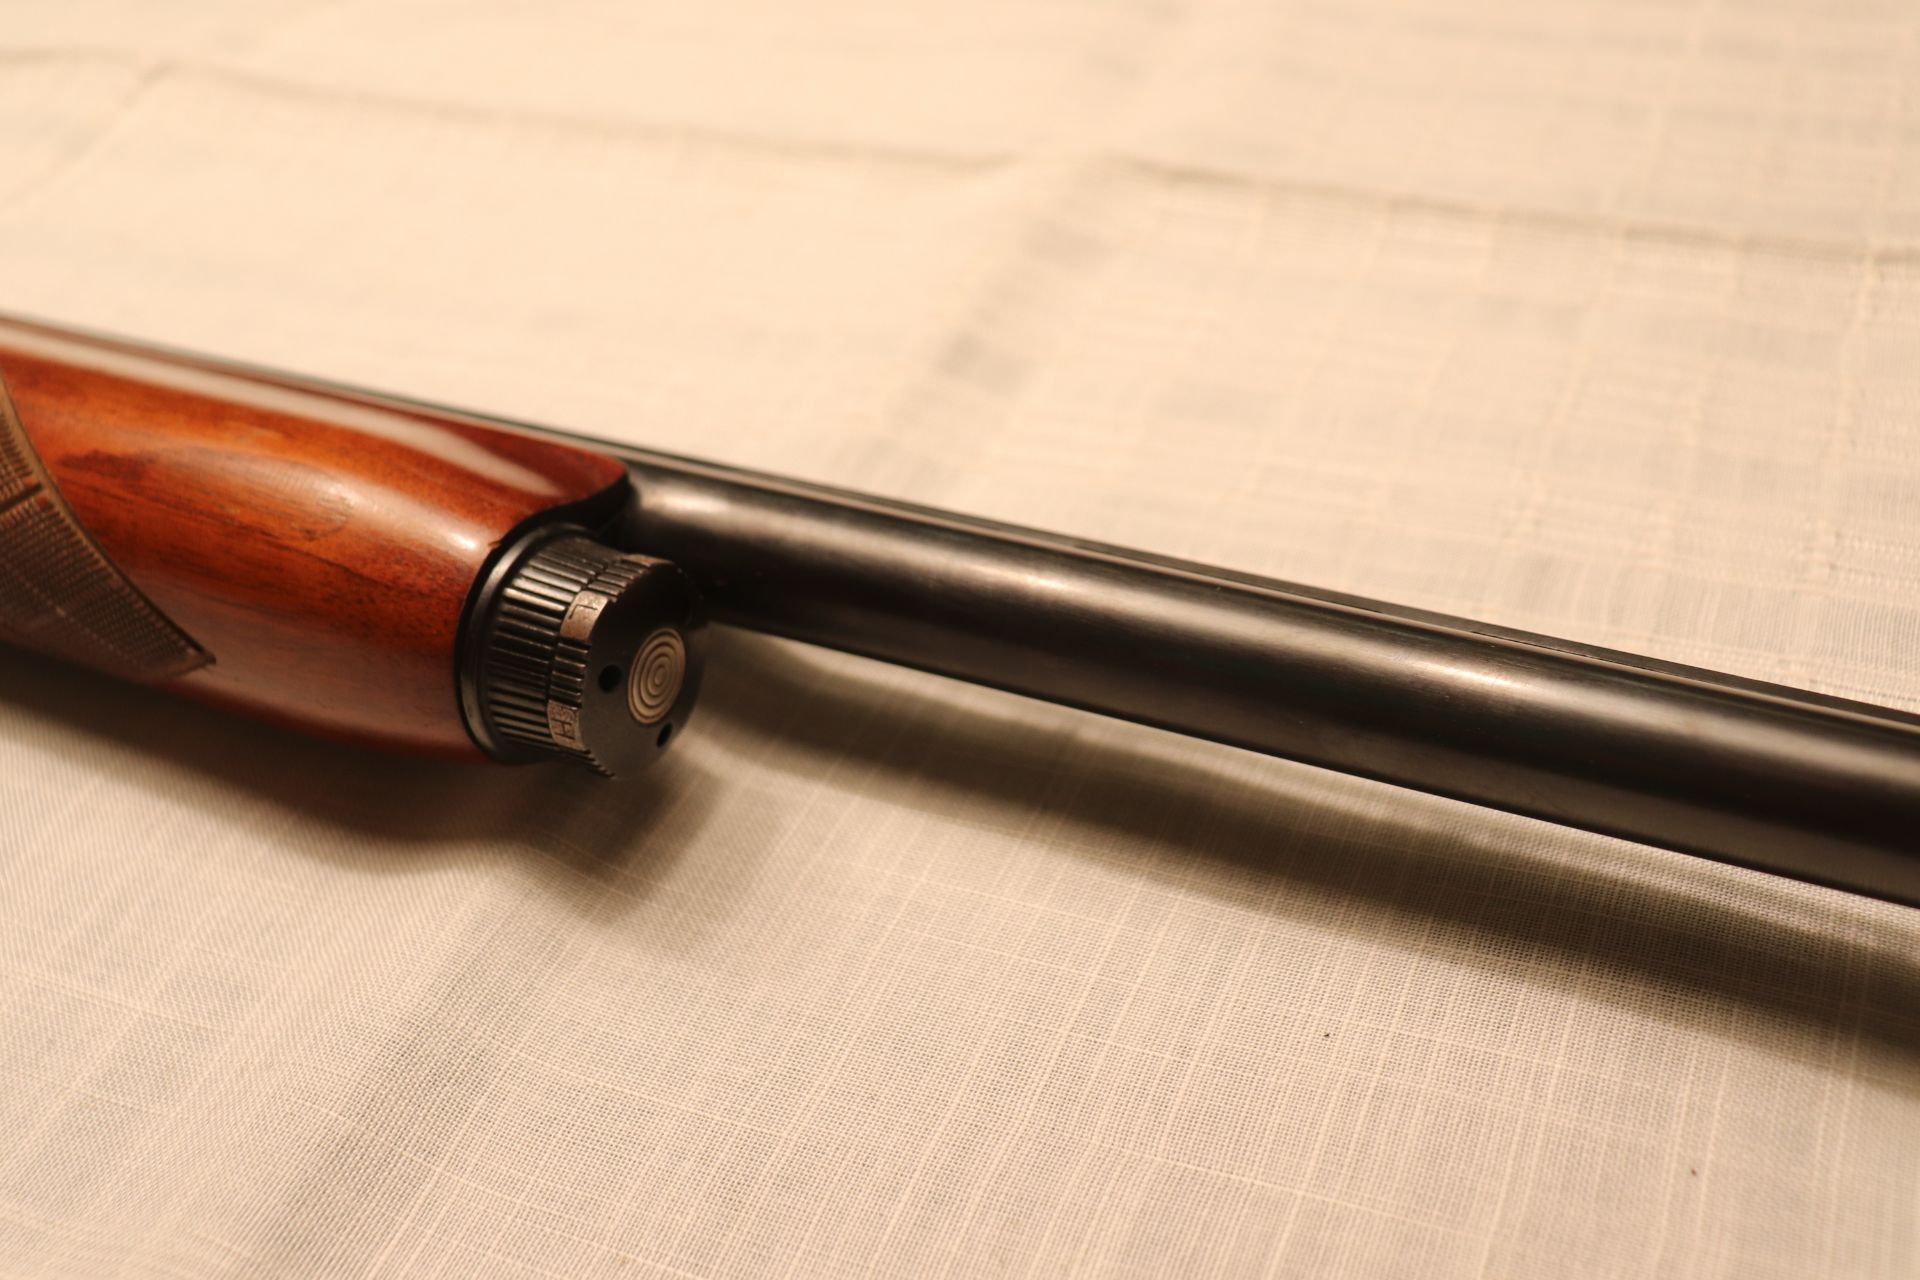 Remmington Sportsman 58 12 gauge shotgun - Image 4 of 8